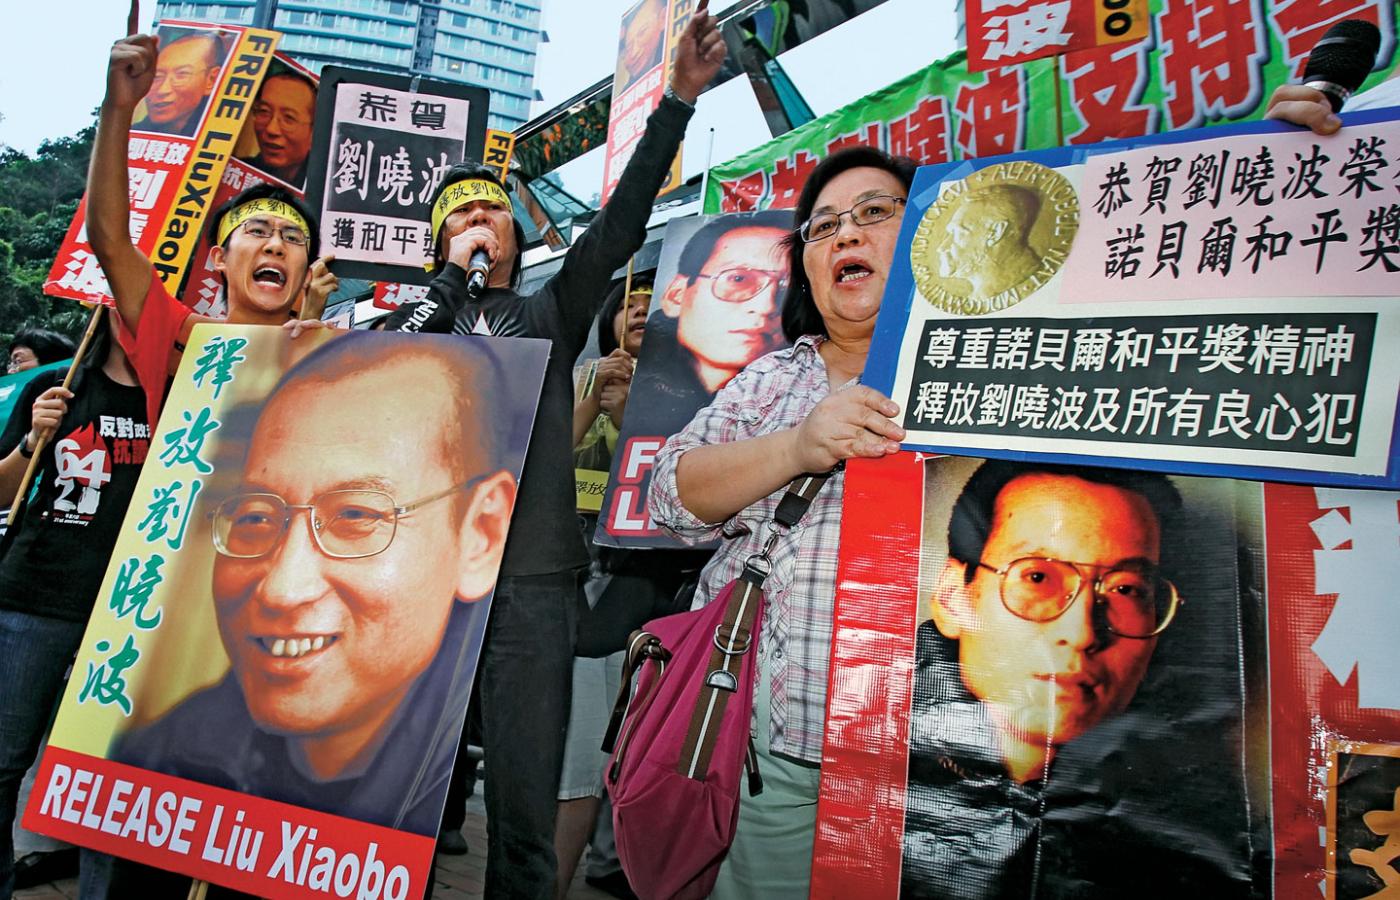 Za uwolnieniem noblisty można było demonstrować tylko w Hongkongu.